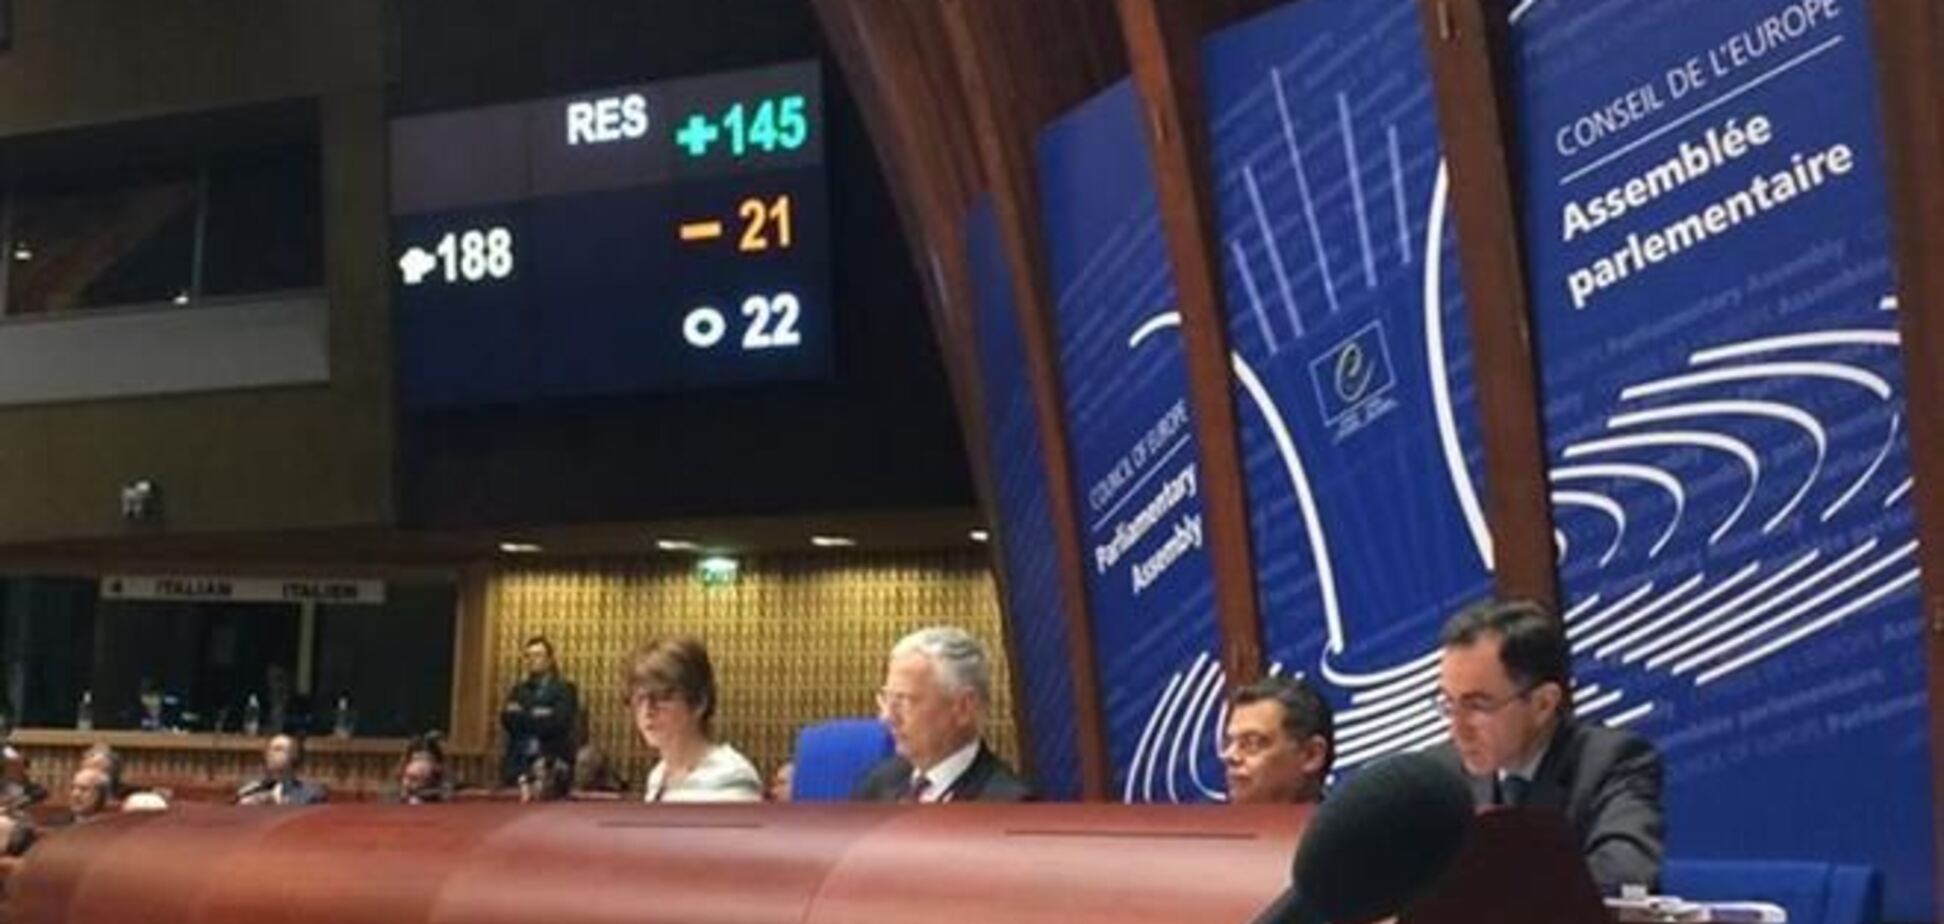 ПАСЕ лишила Россию права голоса в ассамблее до конца сессии 2014. Текст